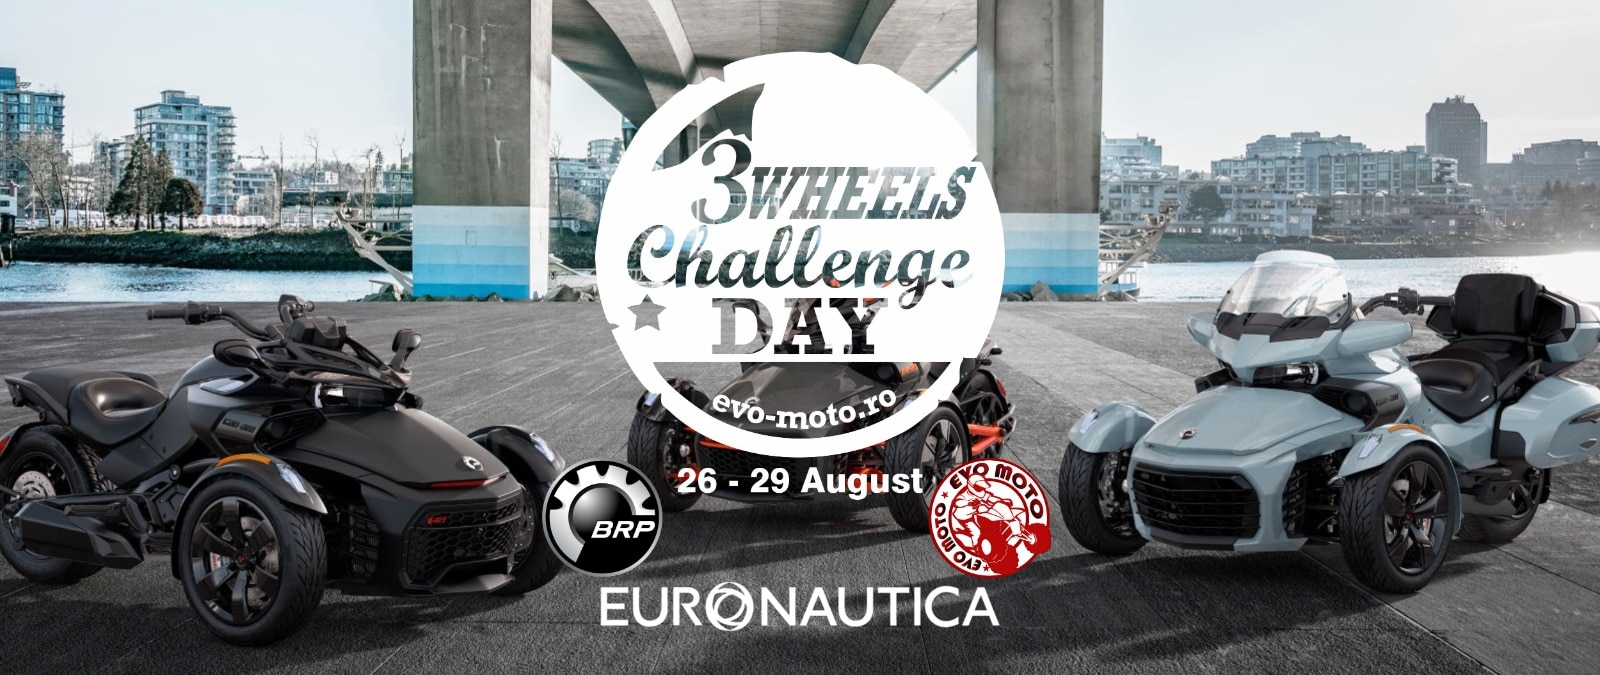 eveniment-3-wheels-challenge-day-sovata